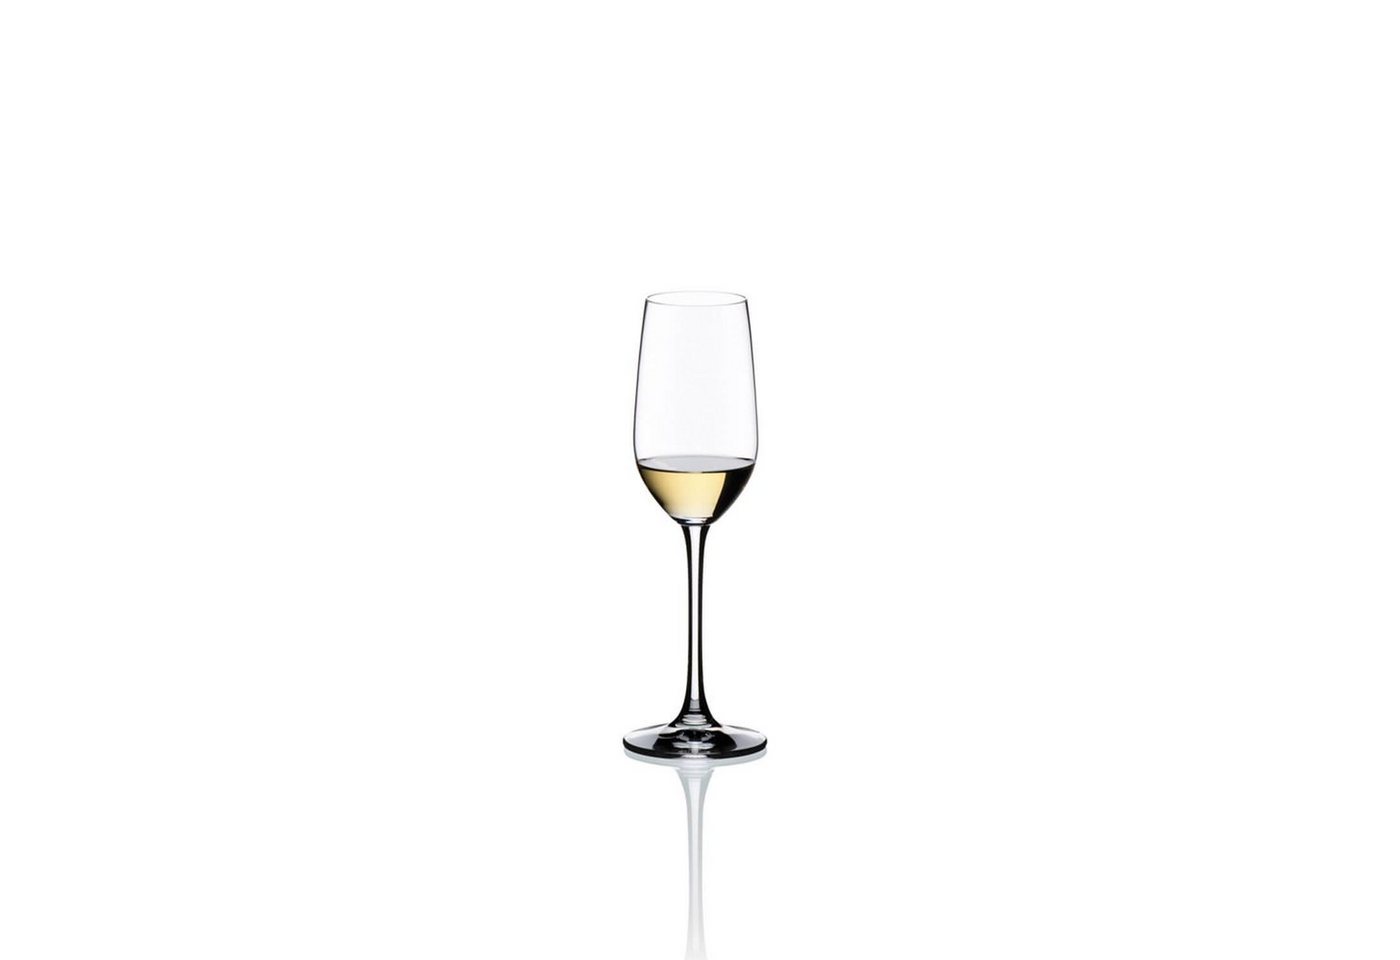 RIEDEL THE WINE GLASS COMPANY Schnapsglas Riedel Tequila Bar Vinum-Gläser 2er Set, Glas von RIEDEL THE WINE GLASS COMPANY